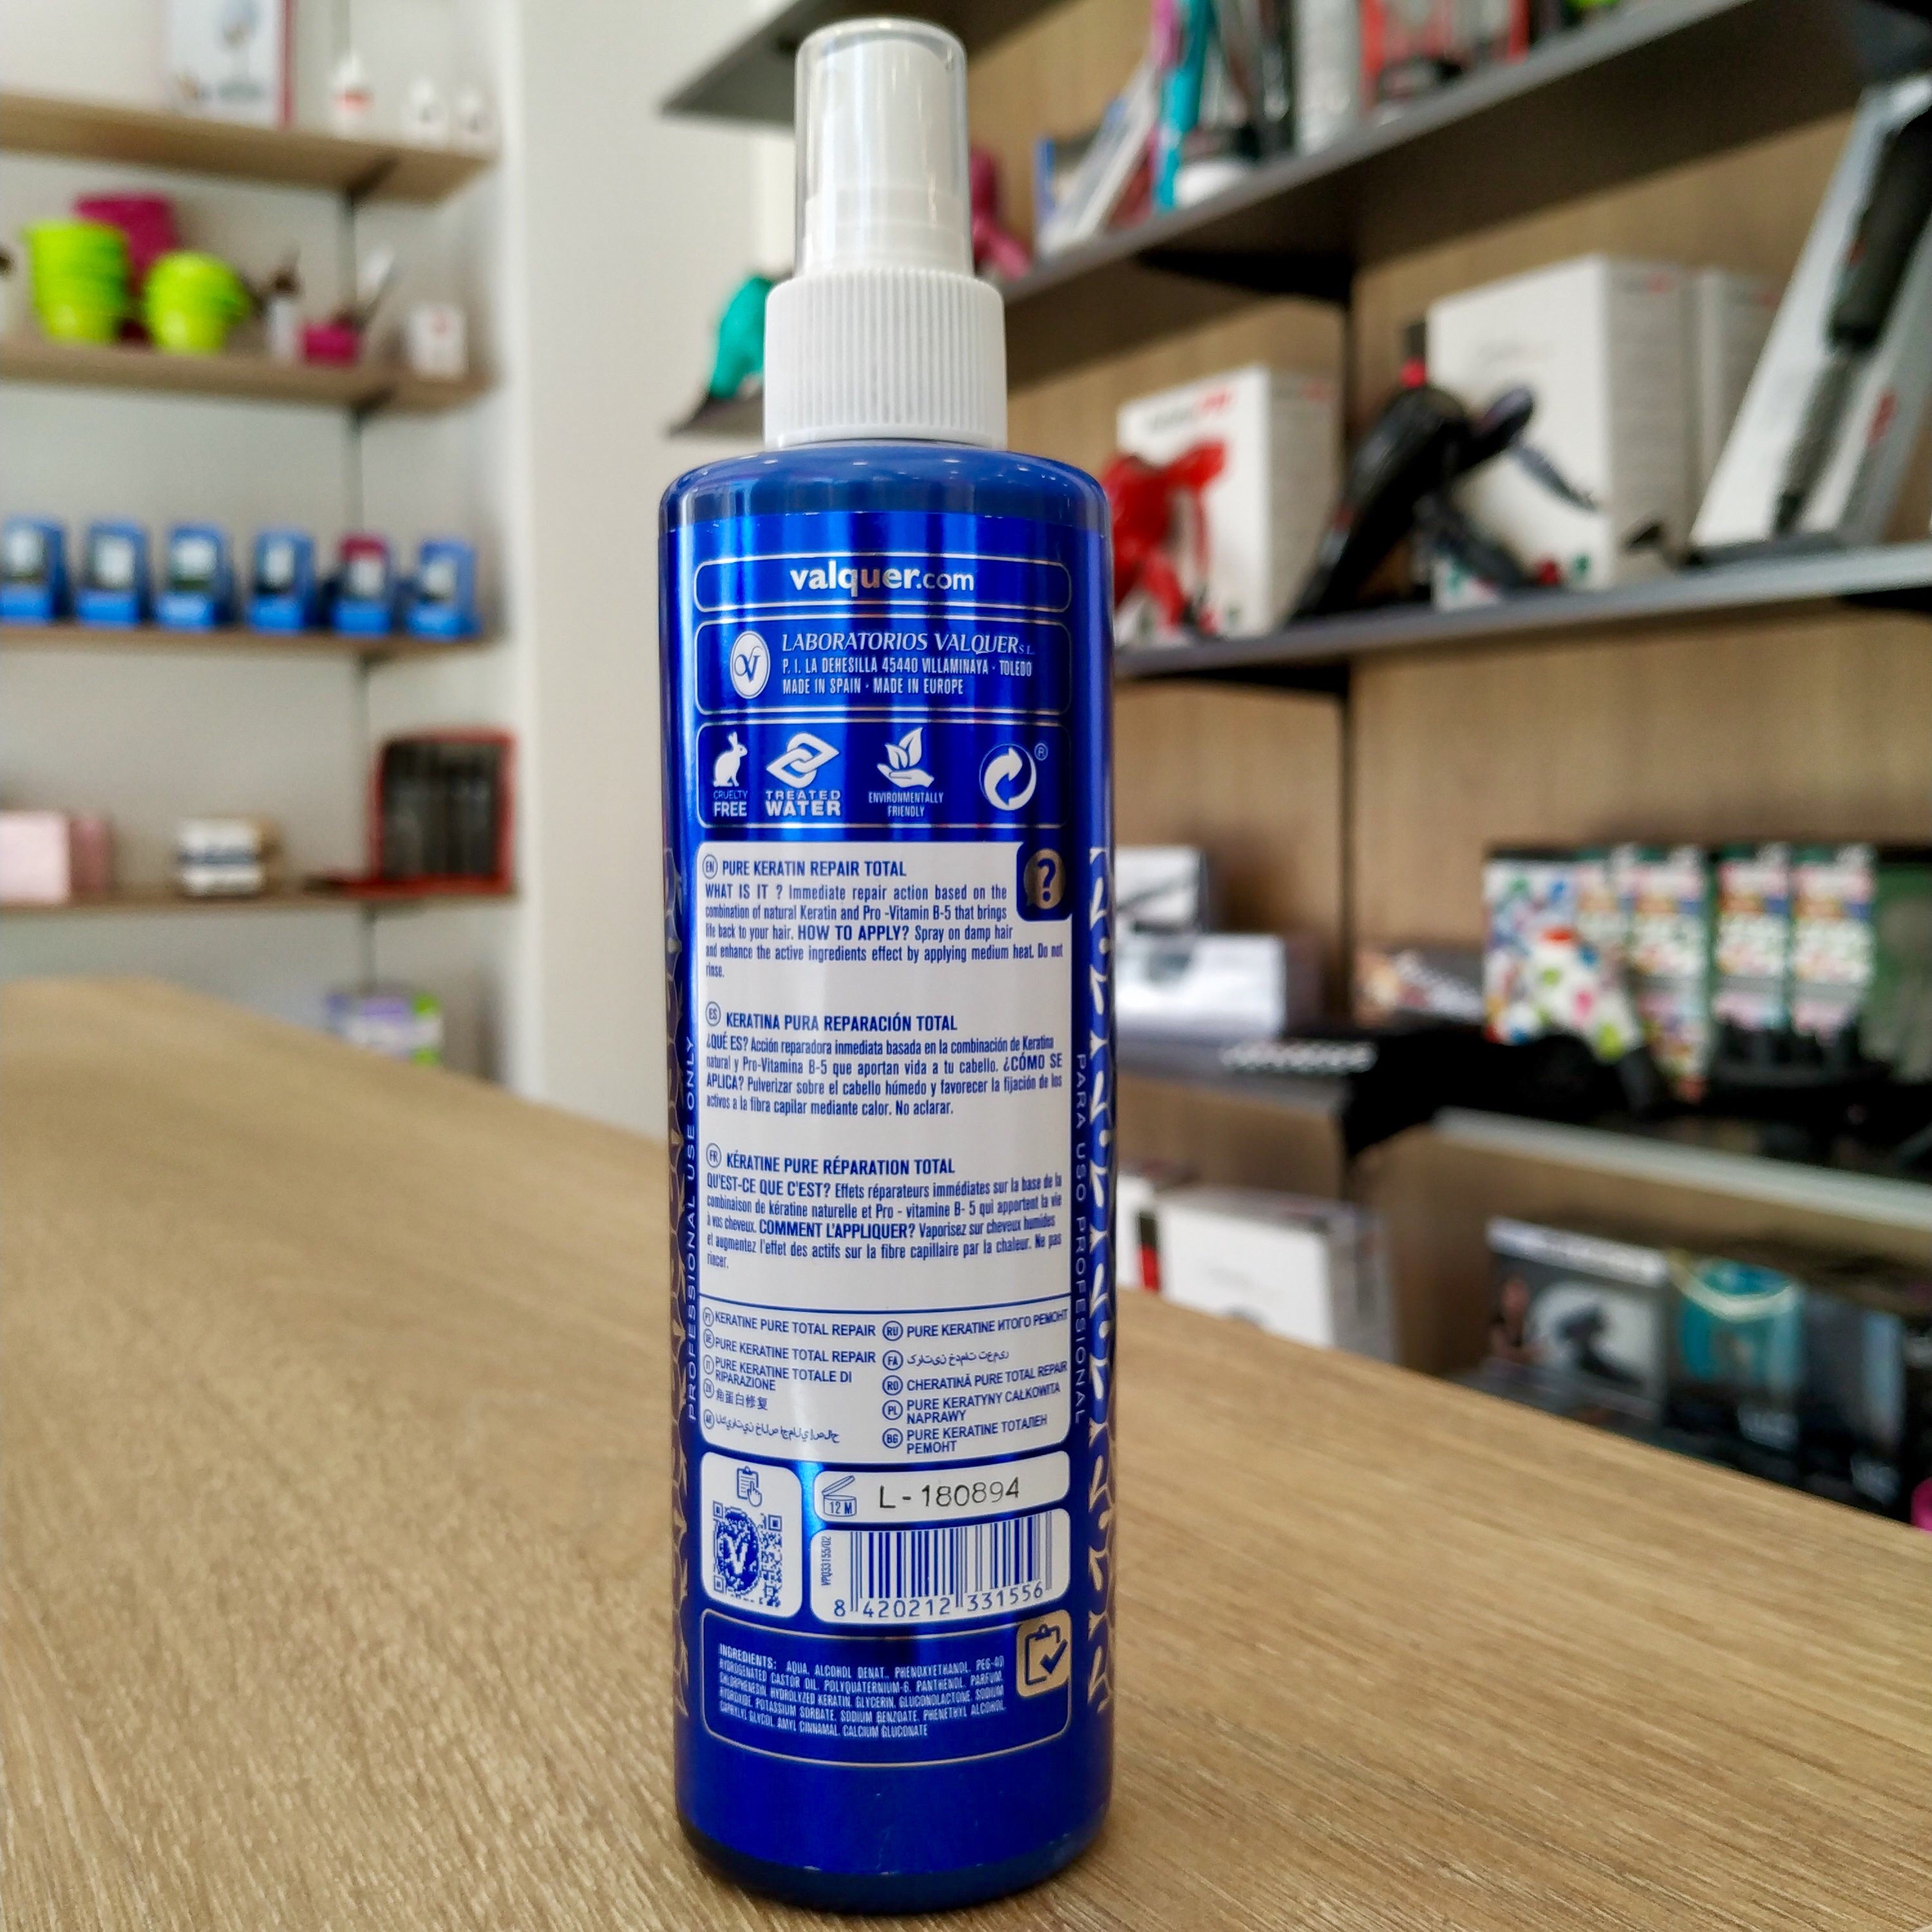 Valquer oxigenada estabilizada en crema 20 volumenes (6%) 1.000 ml – Hair  shop